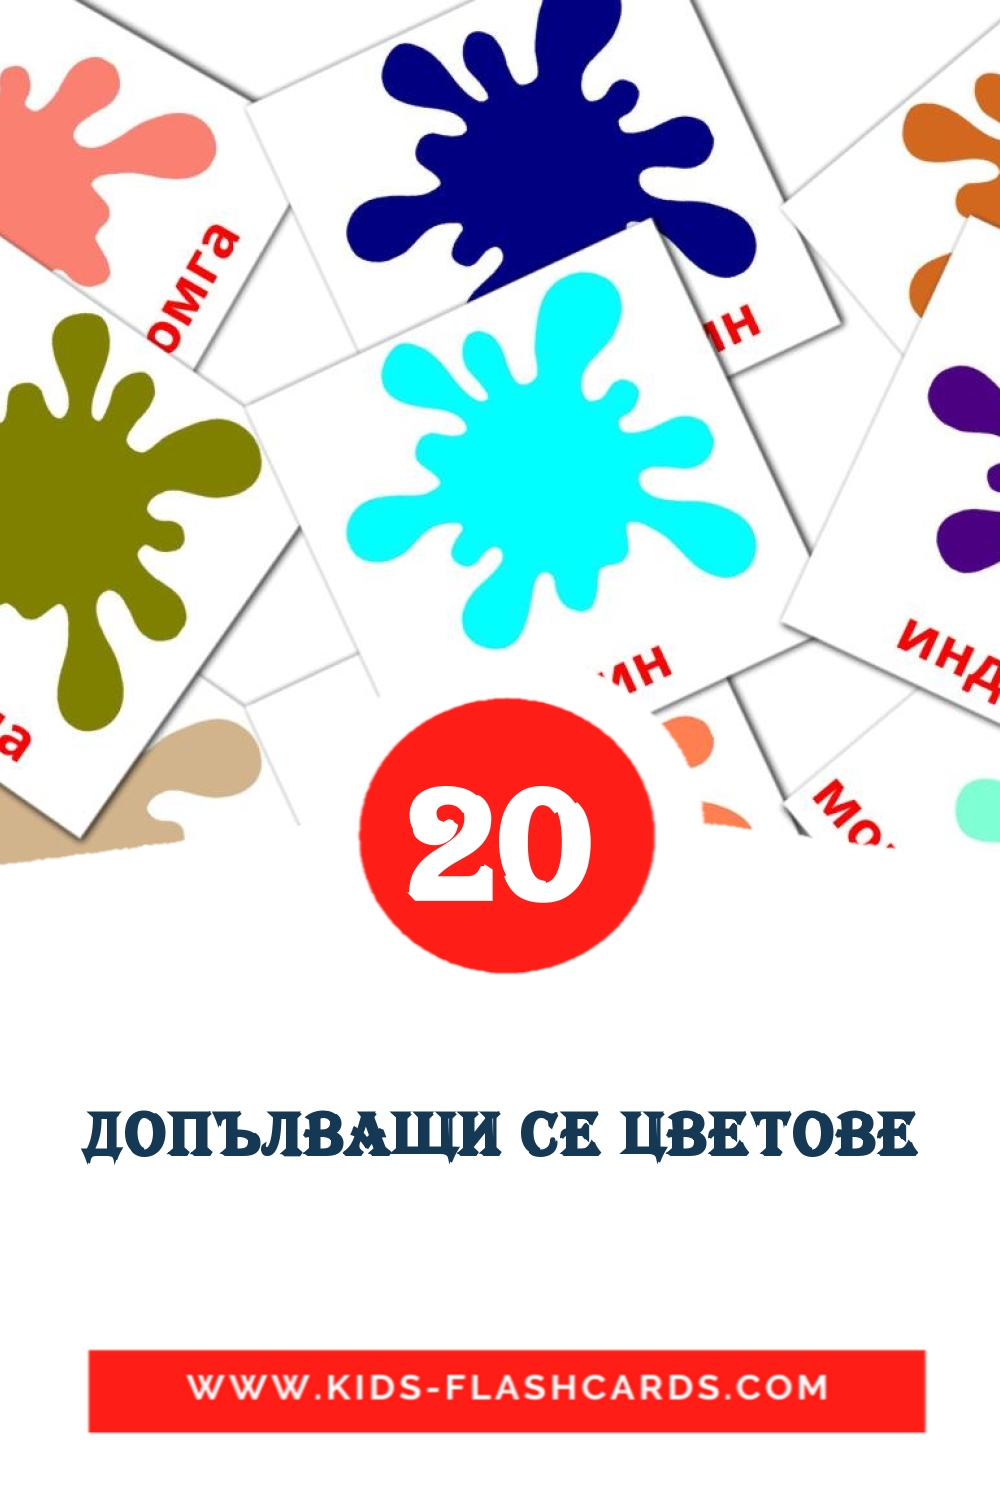 20 cartes illustrées de Допълващи се цветове pour la maternelle en bulgare